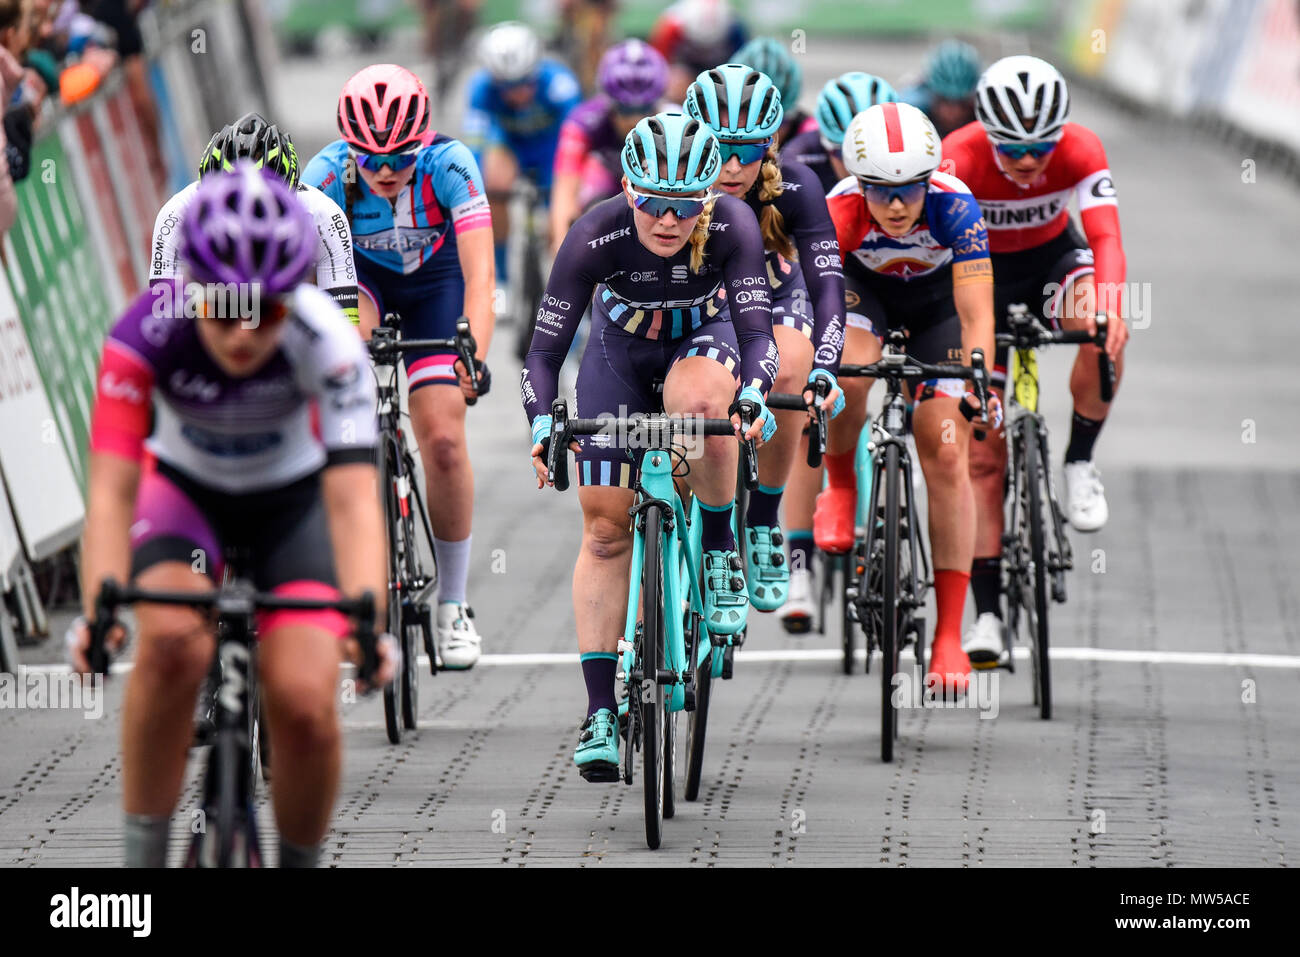 Annie Simpson von Trek Tropfen racing in der Elite Frauen 2018 OVO Energy Tour Serie Radrennen im Wembley, London, UK. Runde 7 Bike Race. Stockfoto